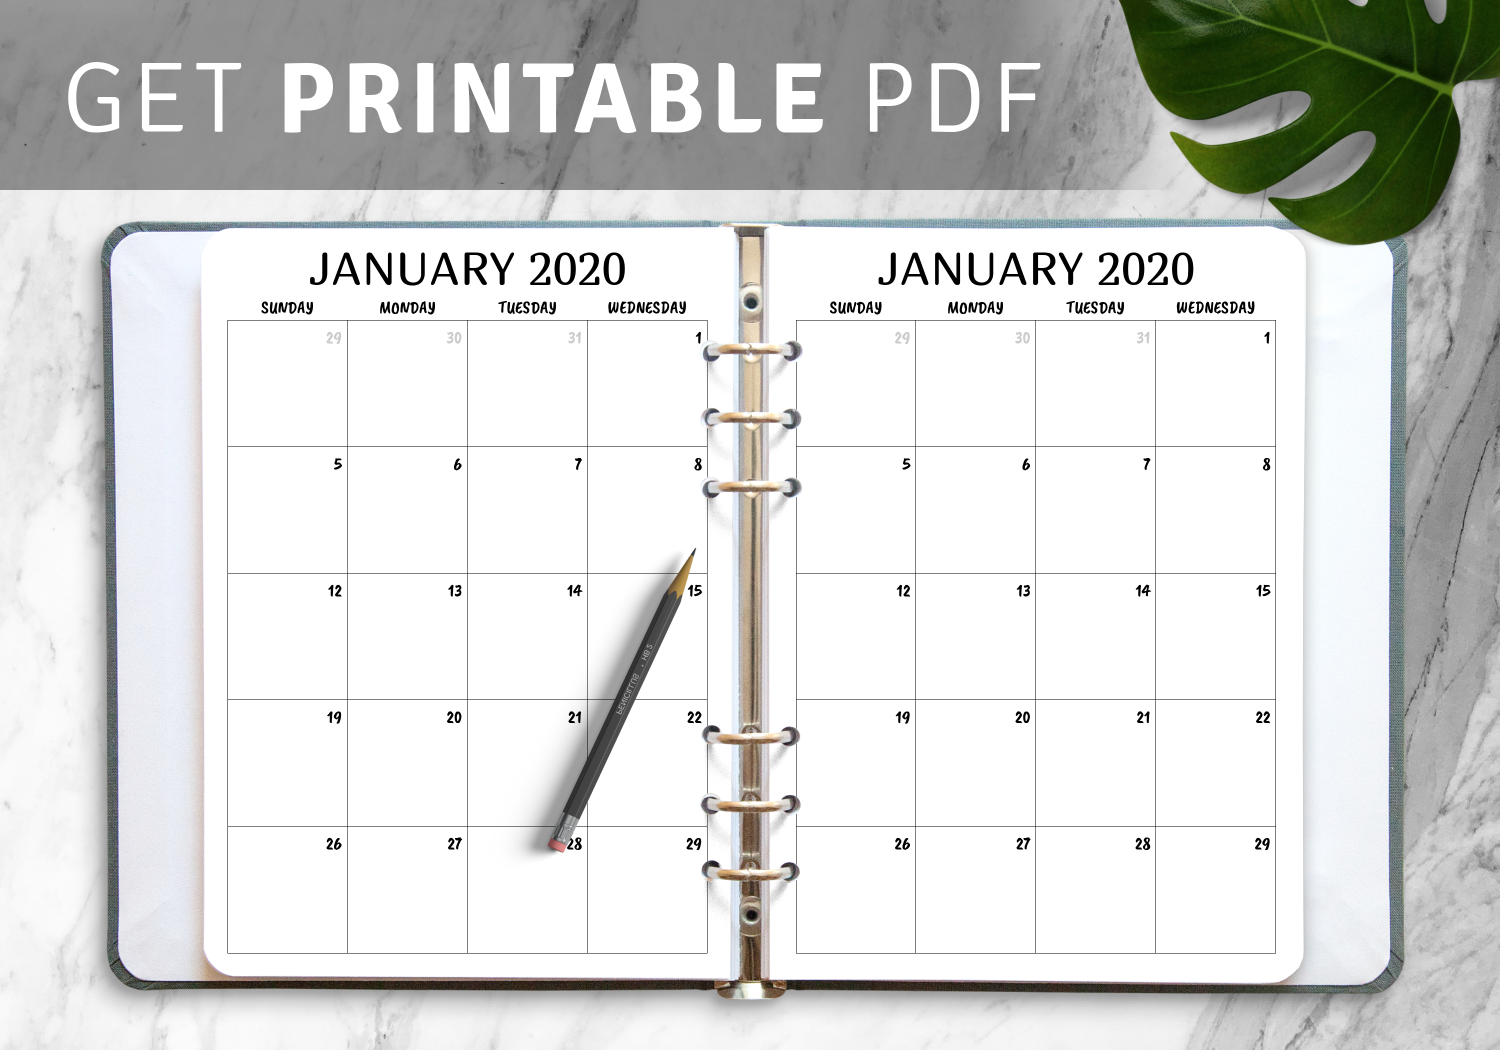 Printable calendar schedule templates